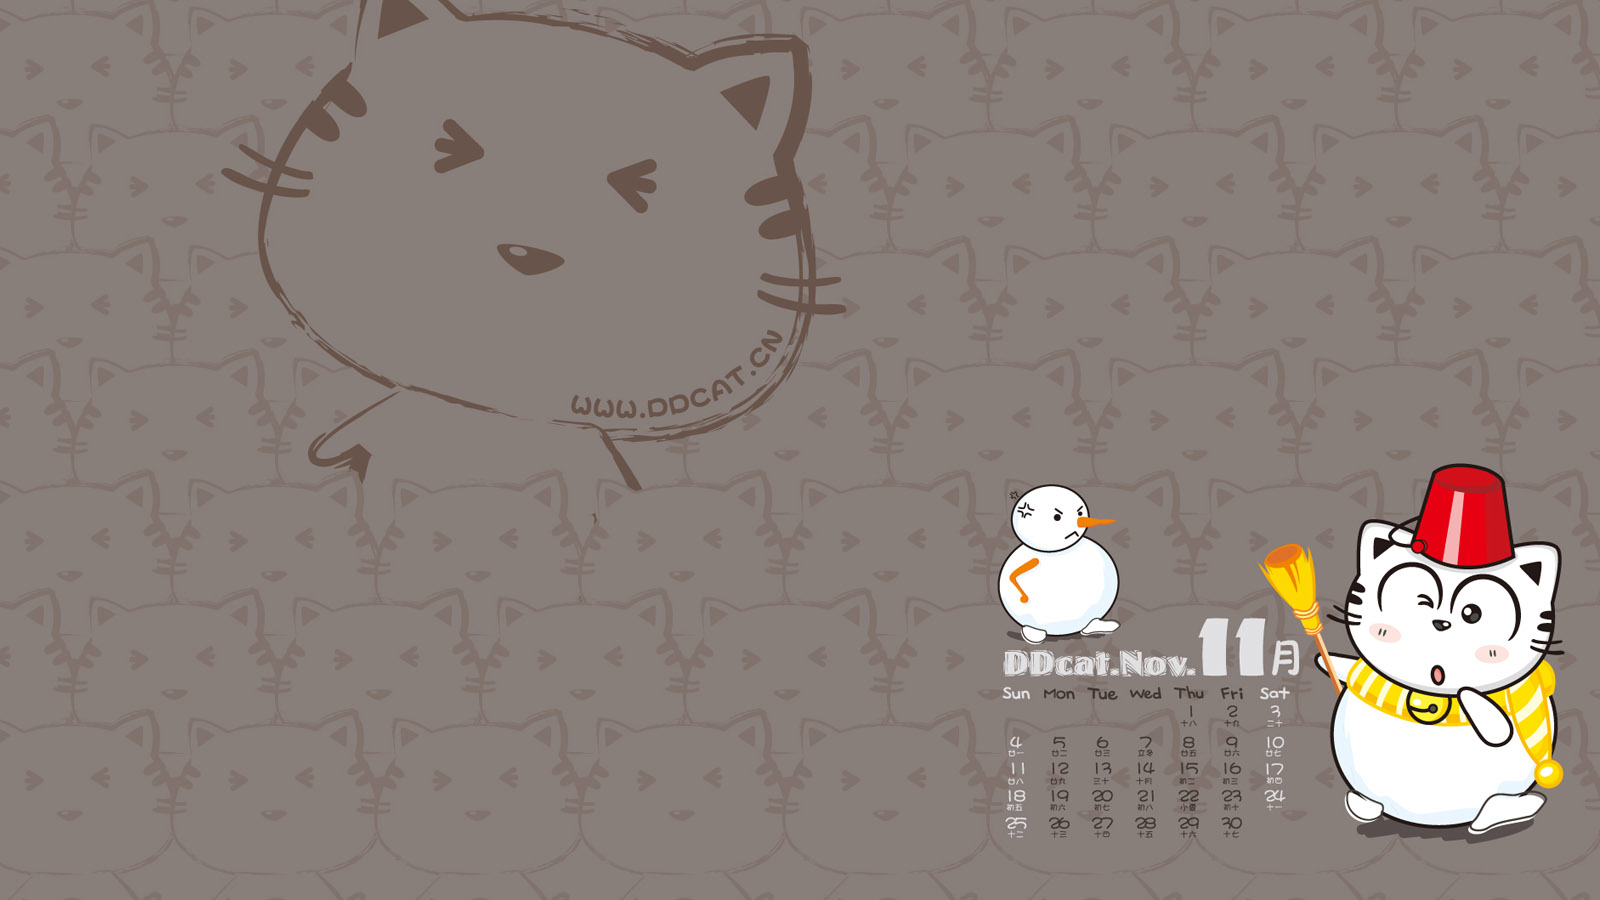 Ding Dong cat November 2012 calendar wallpaper